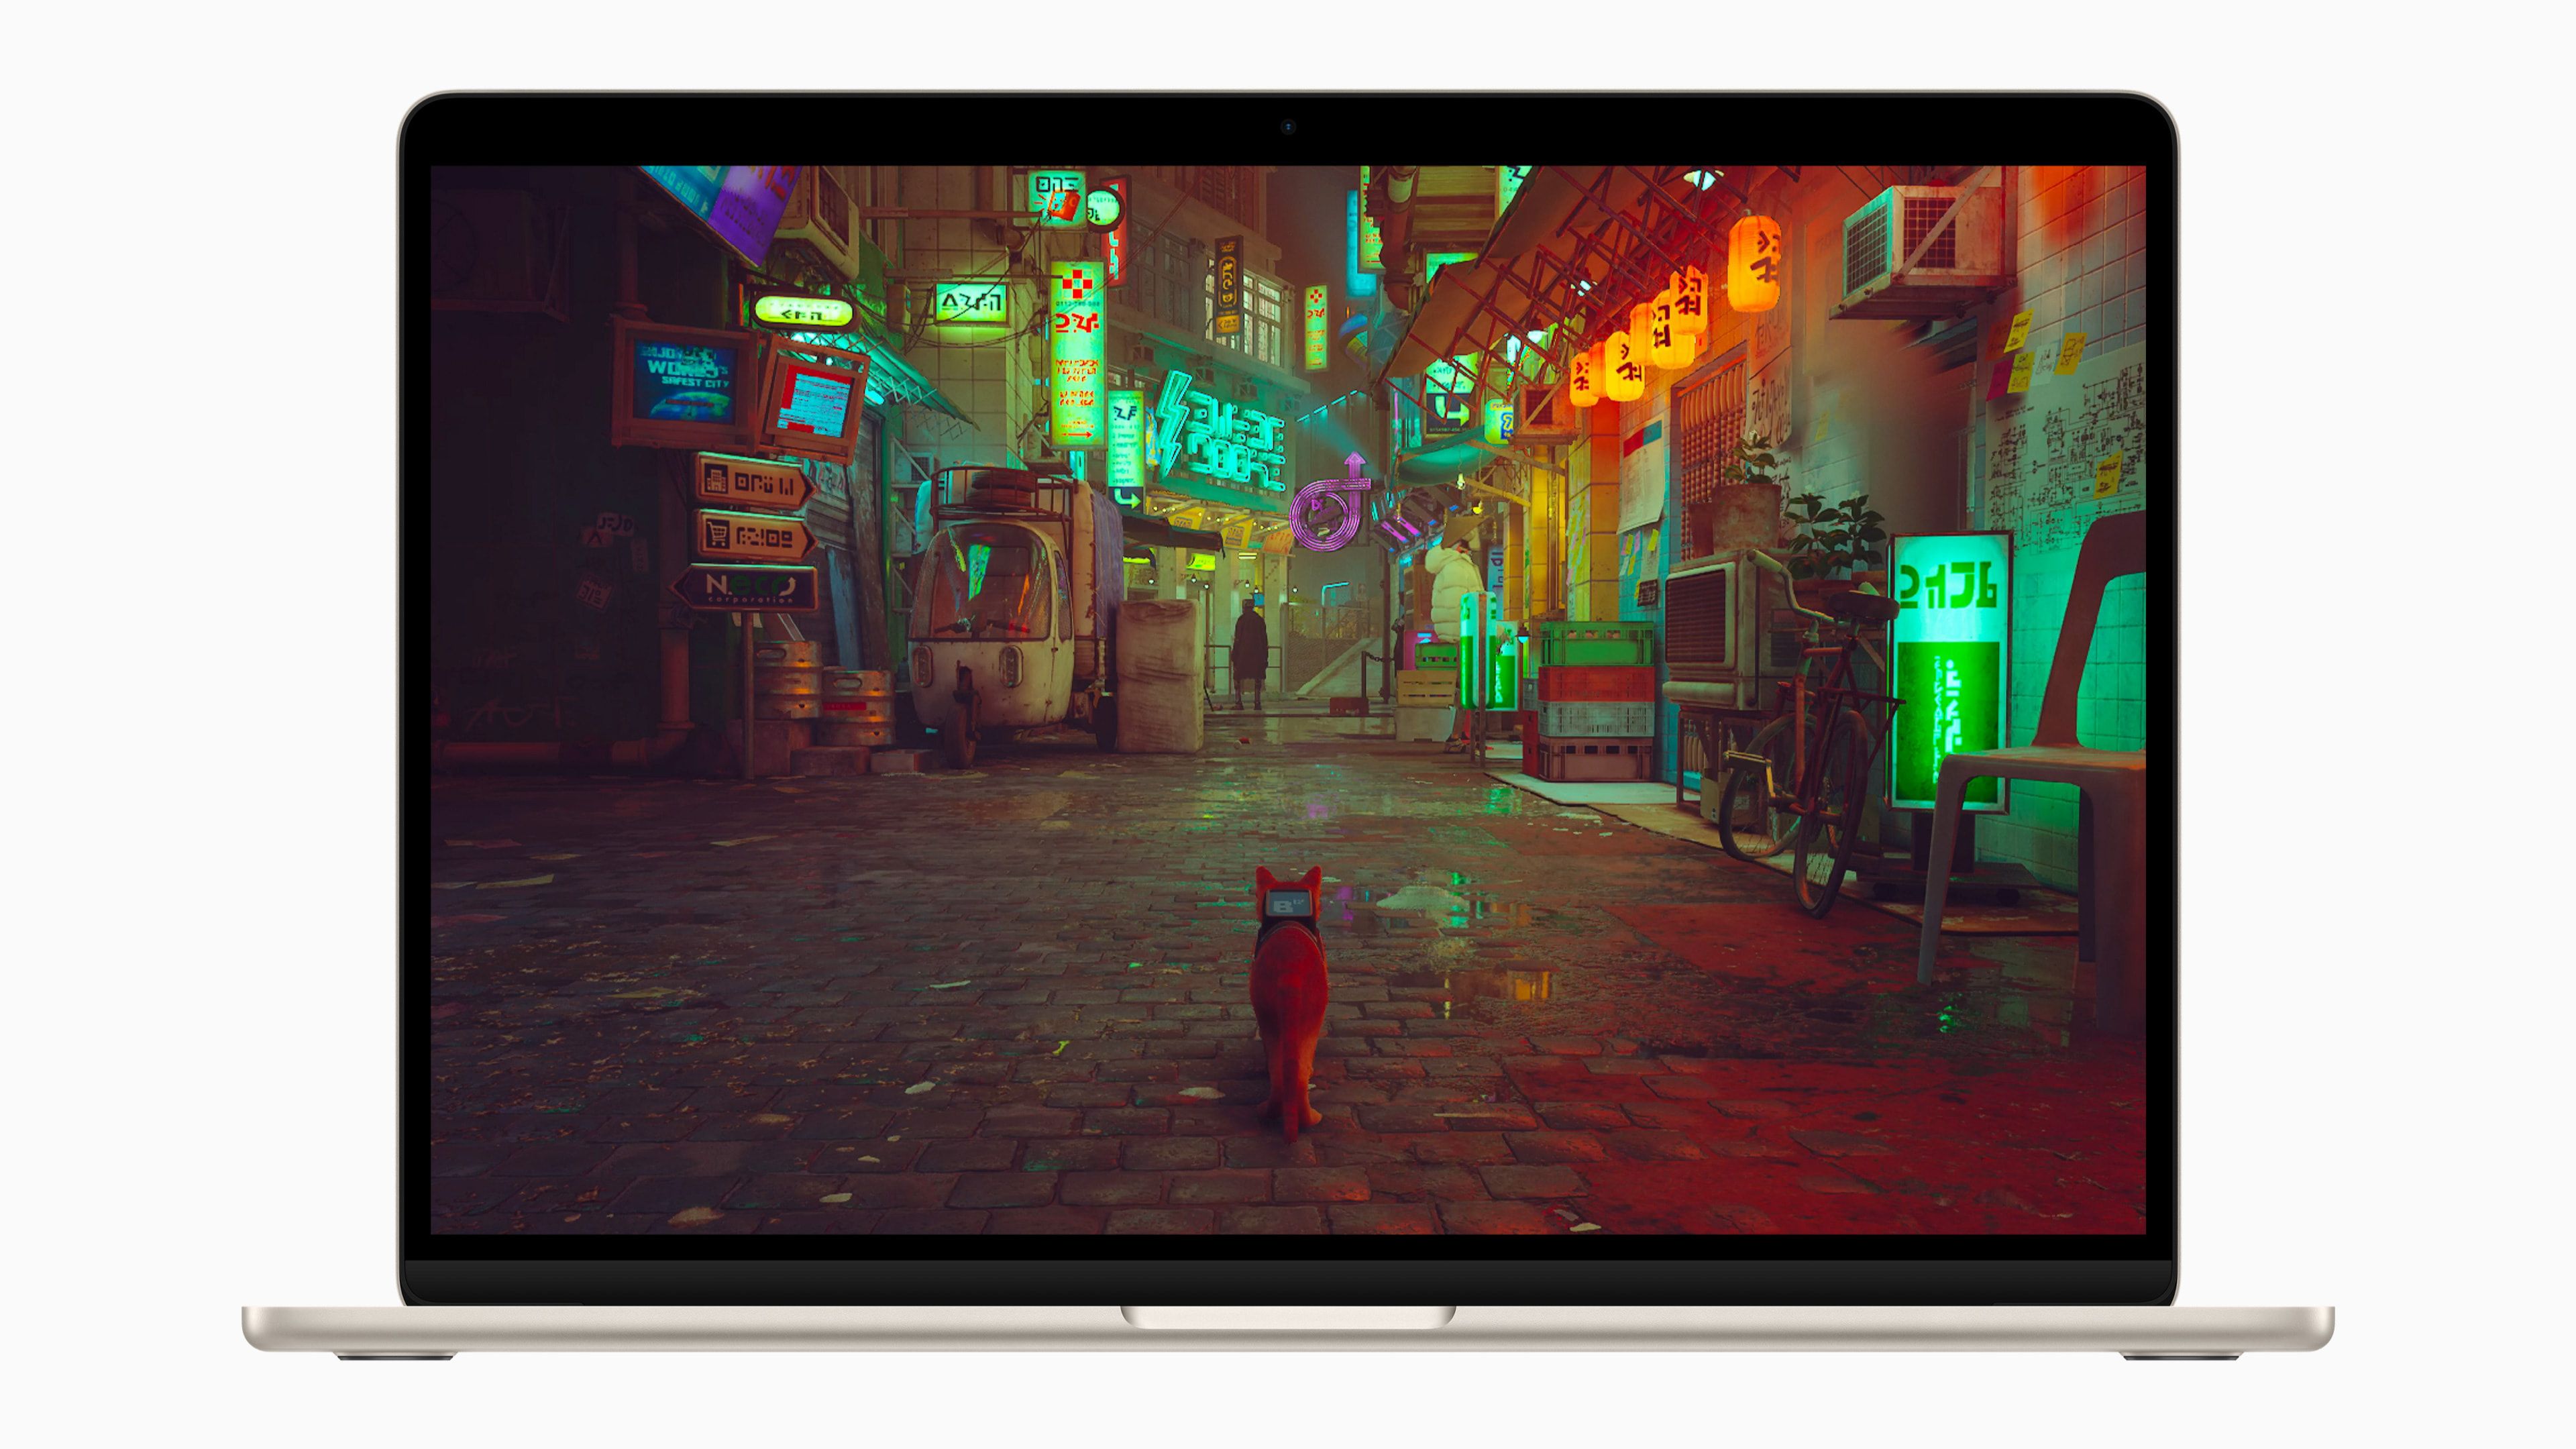 MacBook Air 15 inch hiển thị trò chơi video Stray trên màn hình